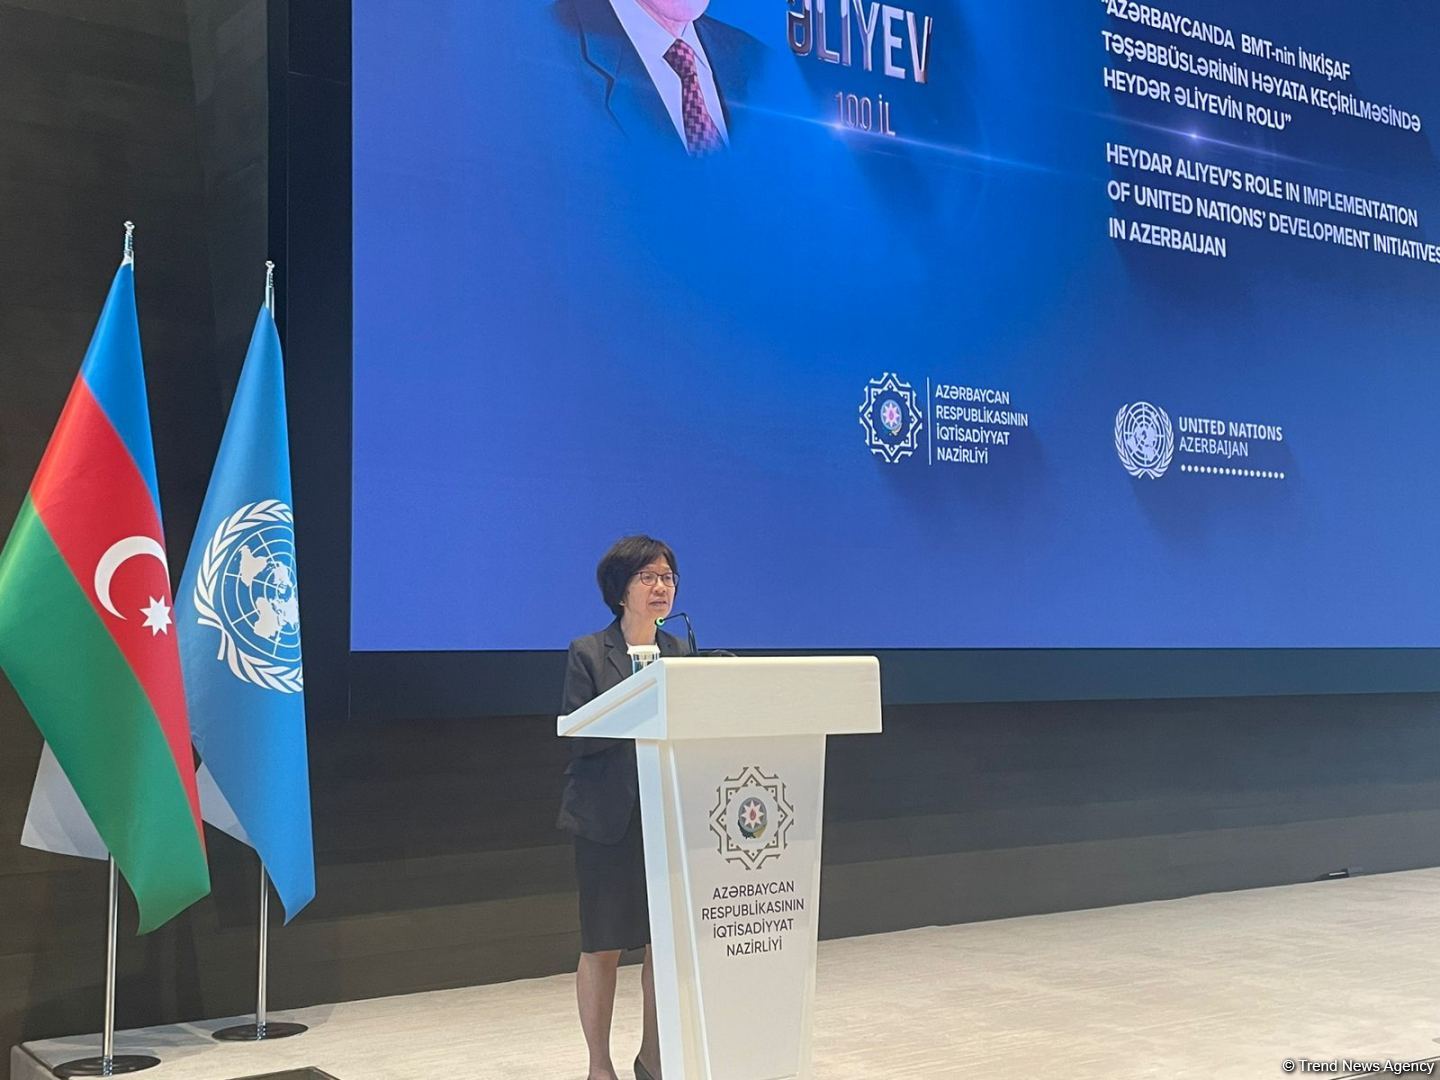 Гейдар Алиев внес огромный вклад в установлении сотрудничества Азербайджана с ООН - Бик Лум